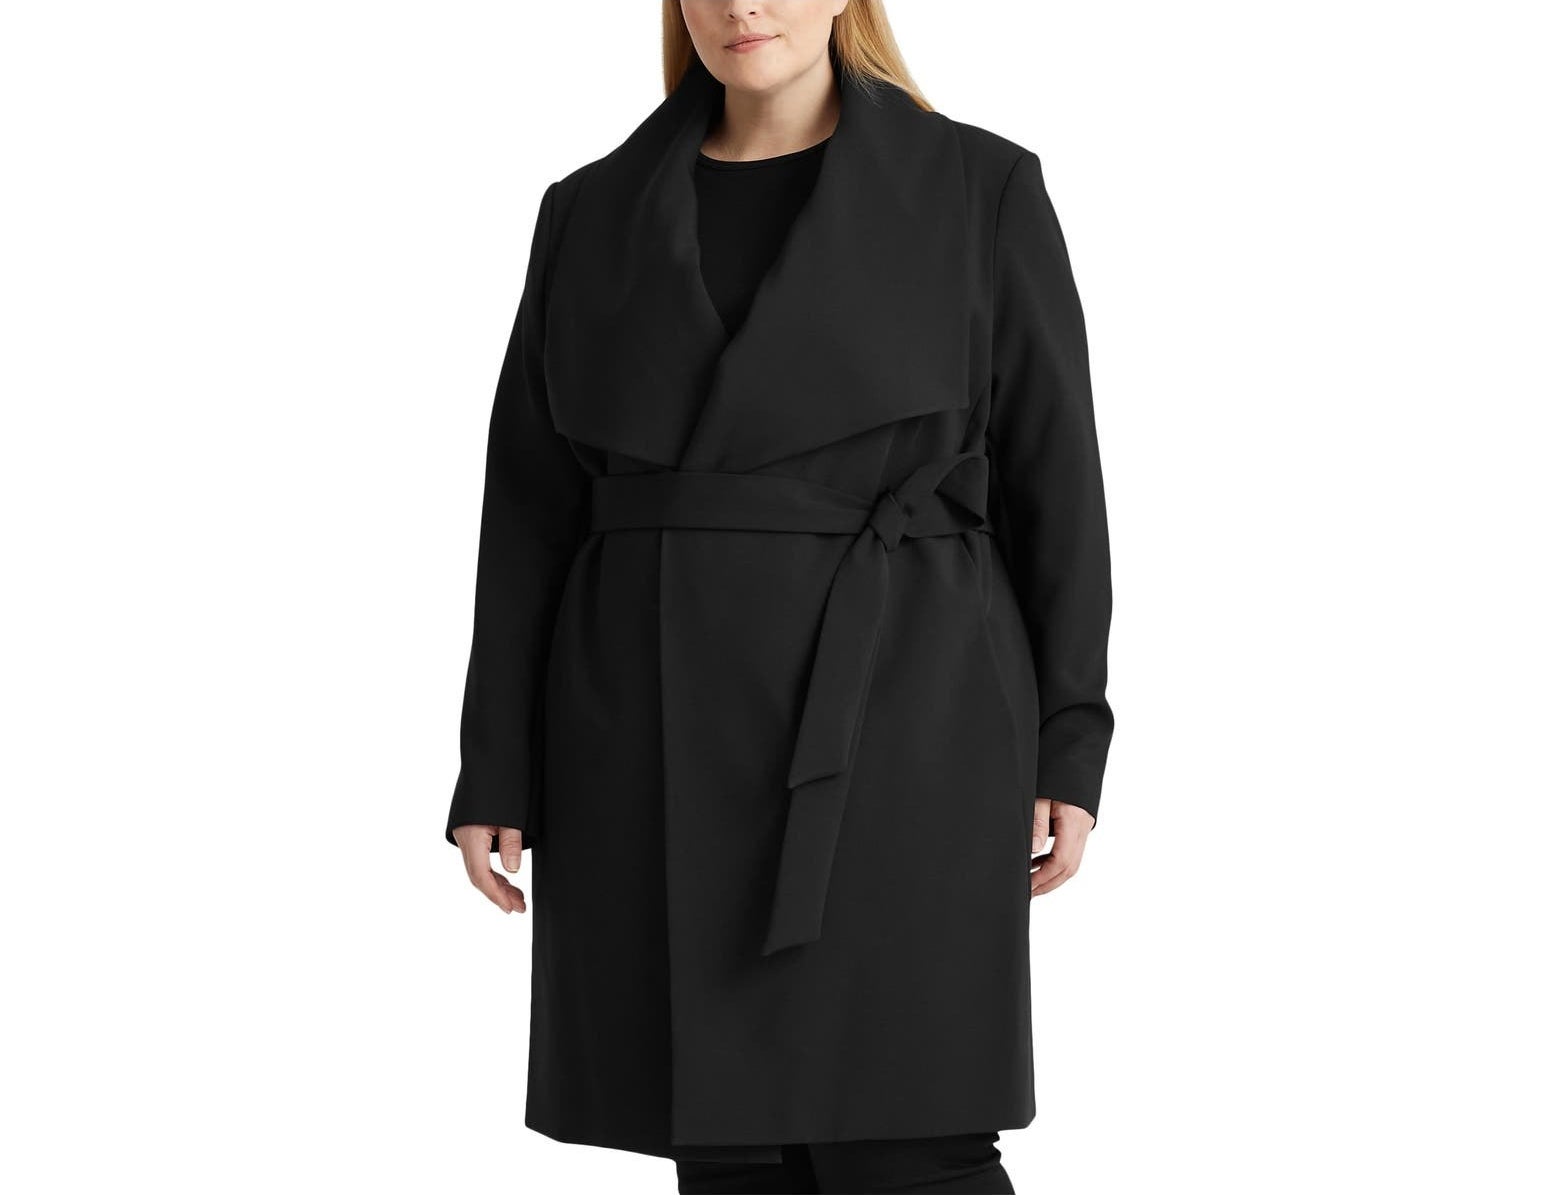 Model wearing the coat in black